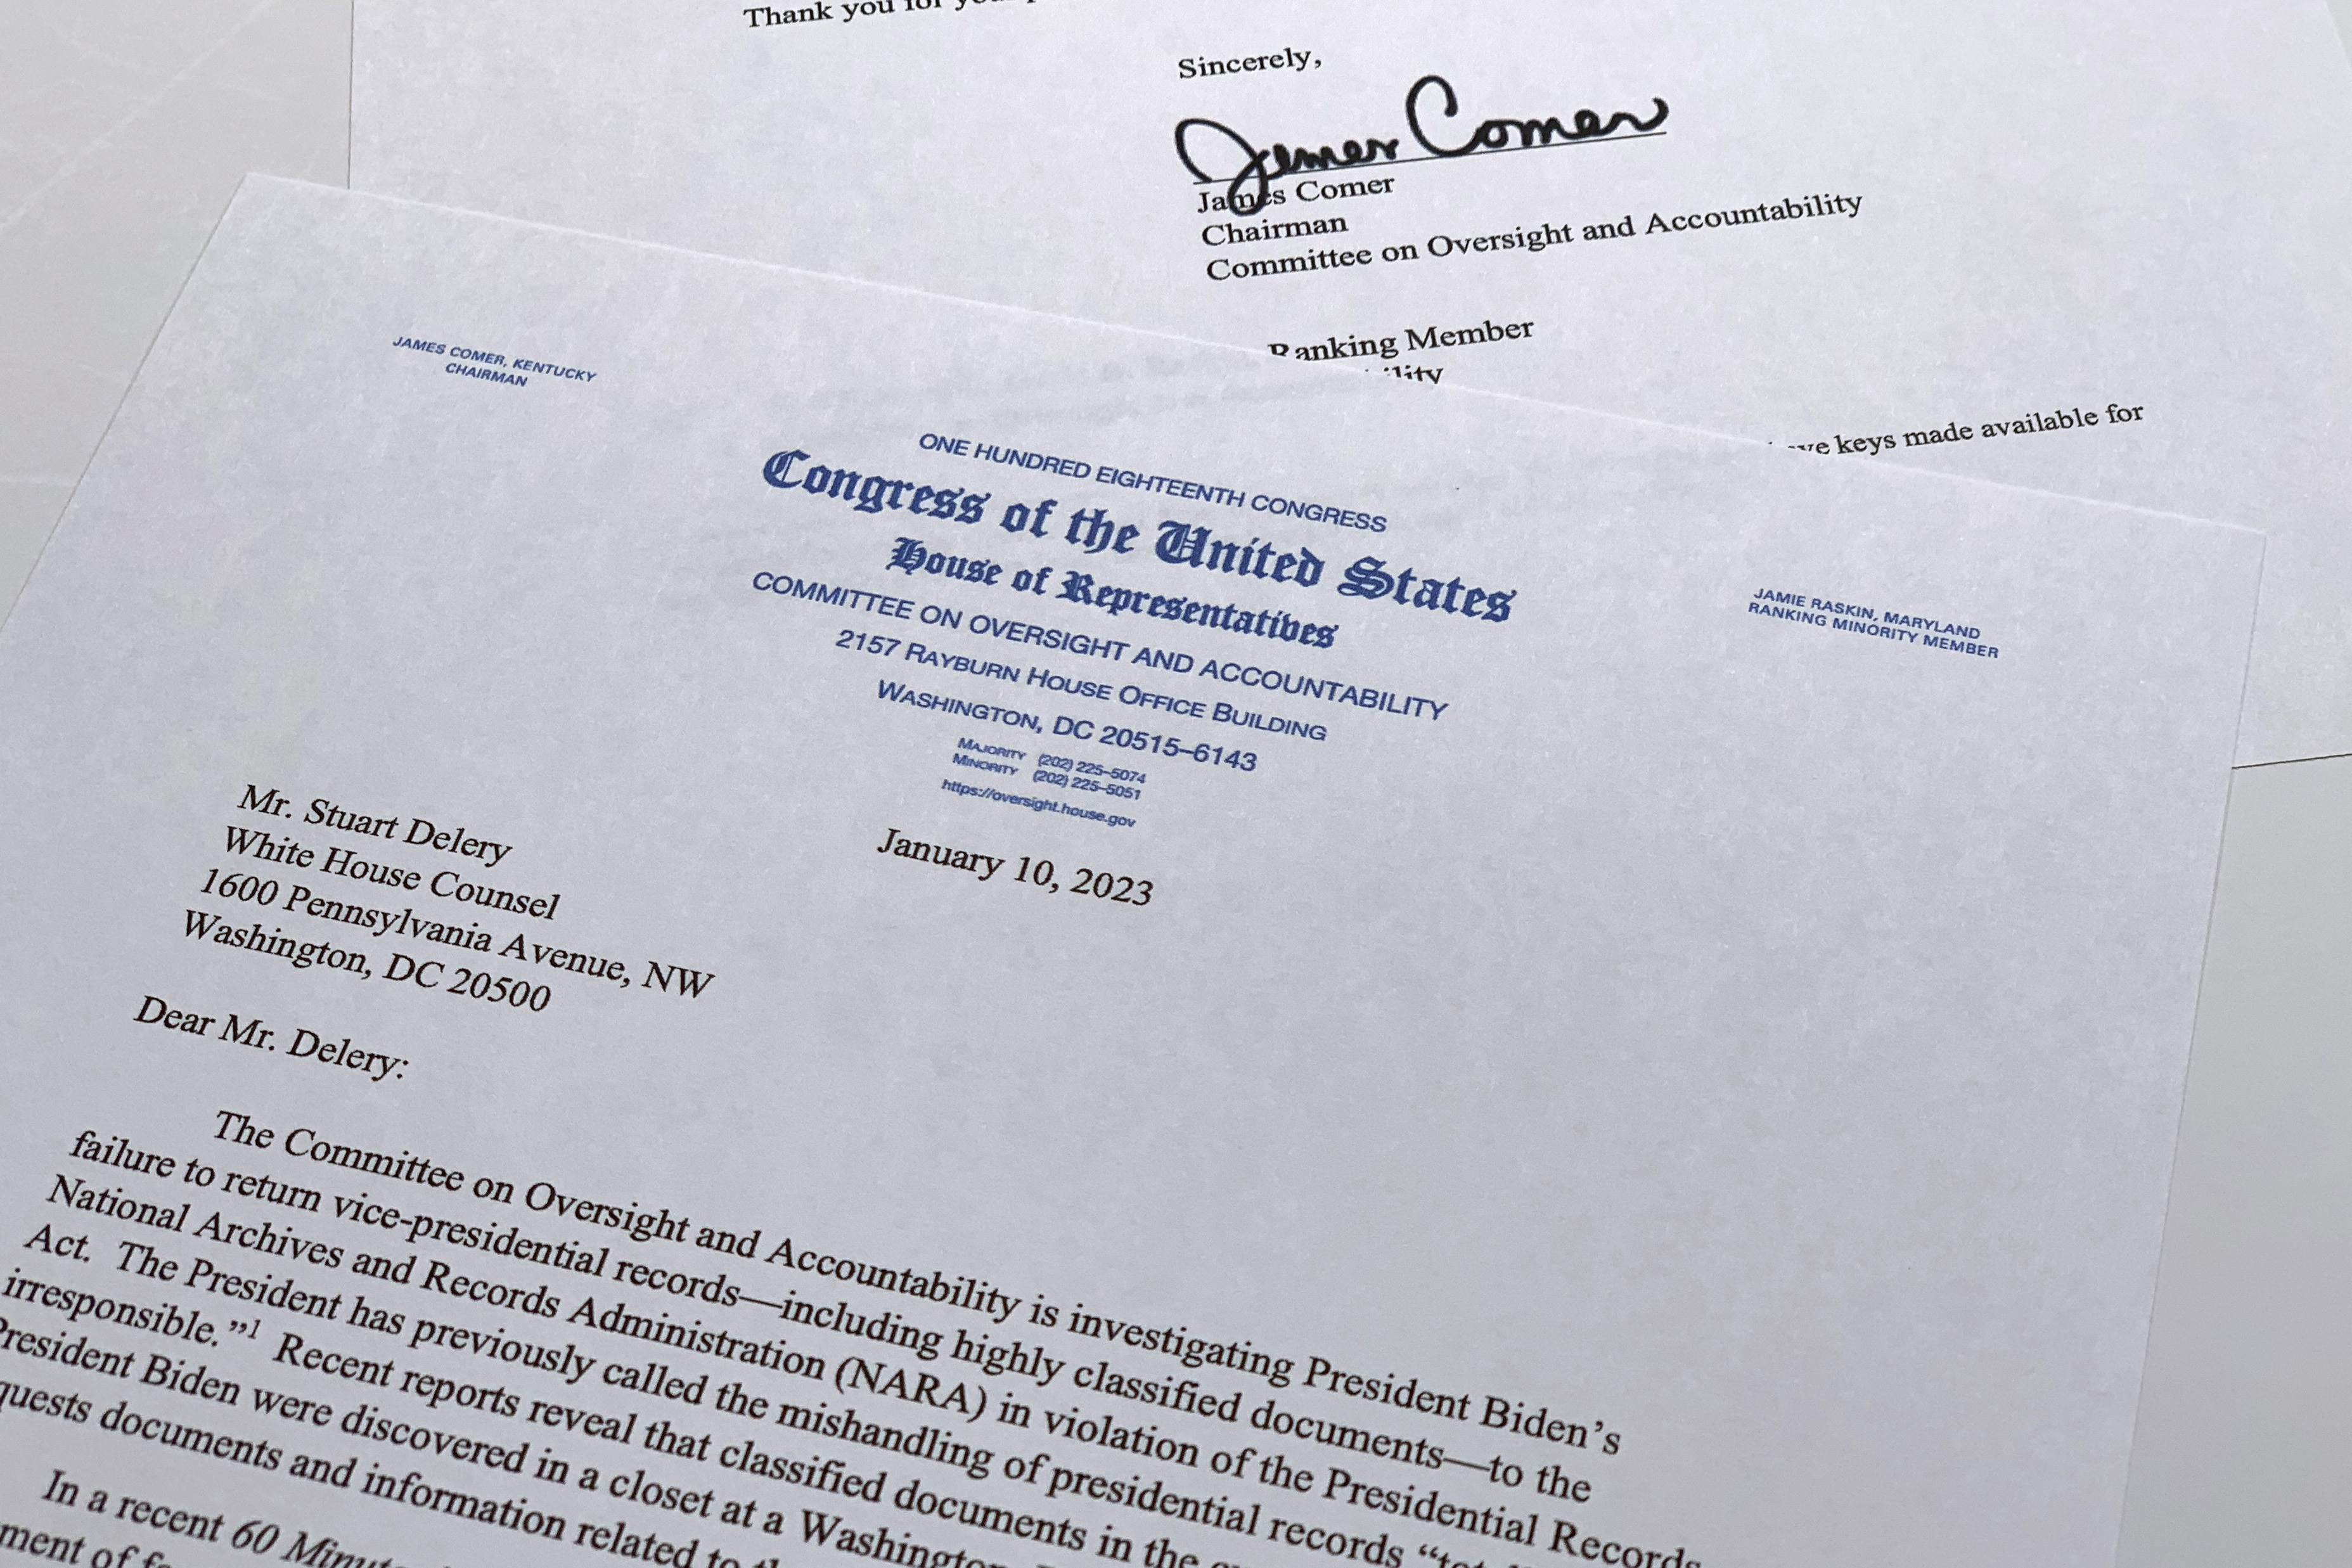 Biden aseguró que supo de la existencia de esos documentos mediante sus abogados, por lo que le “sorprendió enterarse de que hubiera registros del Gobierno llevados a ese lugar, a esa oficina”. (AP)